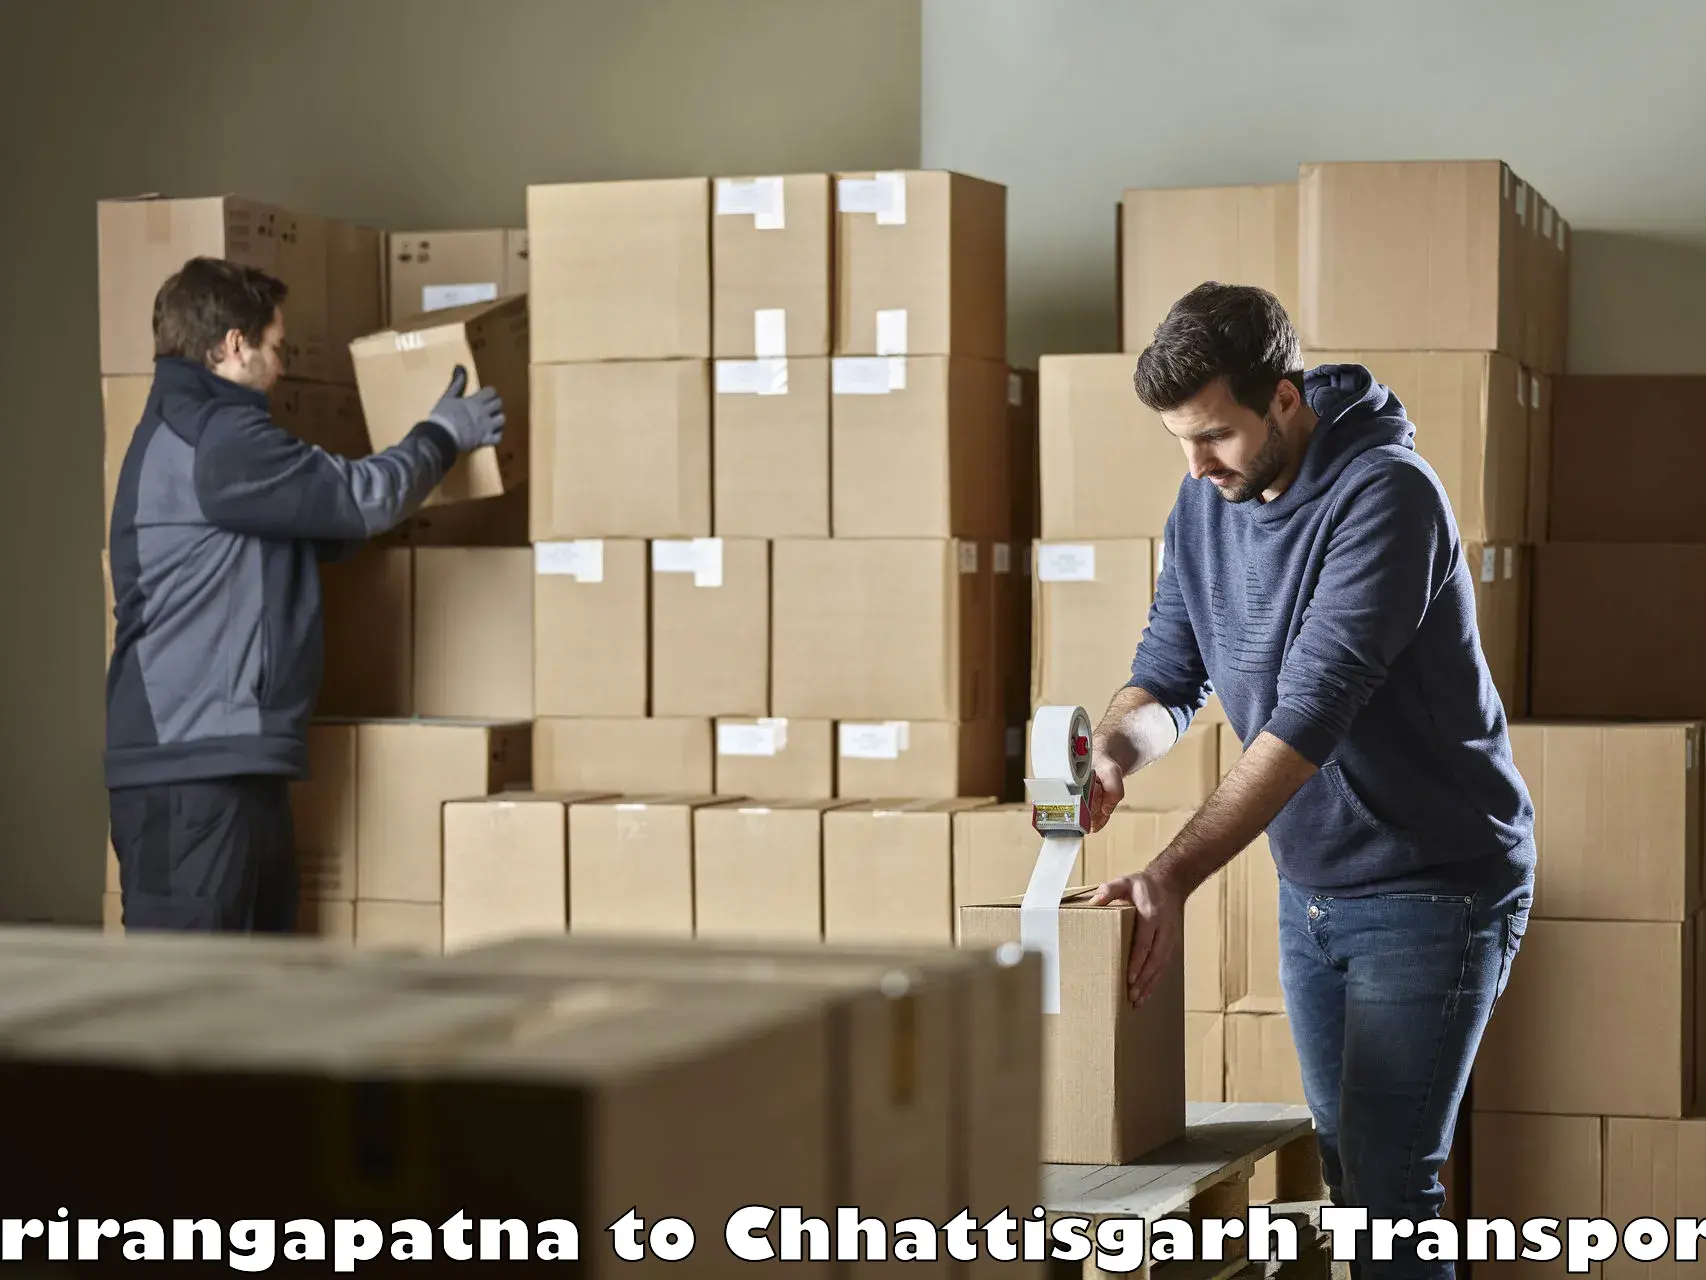 Furniture transport service Srirangapatna to Korea Chhattisgarh